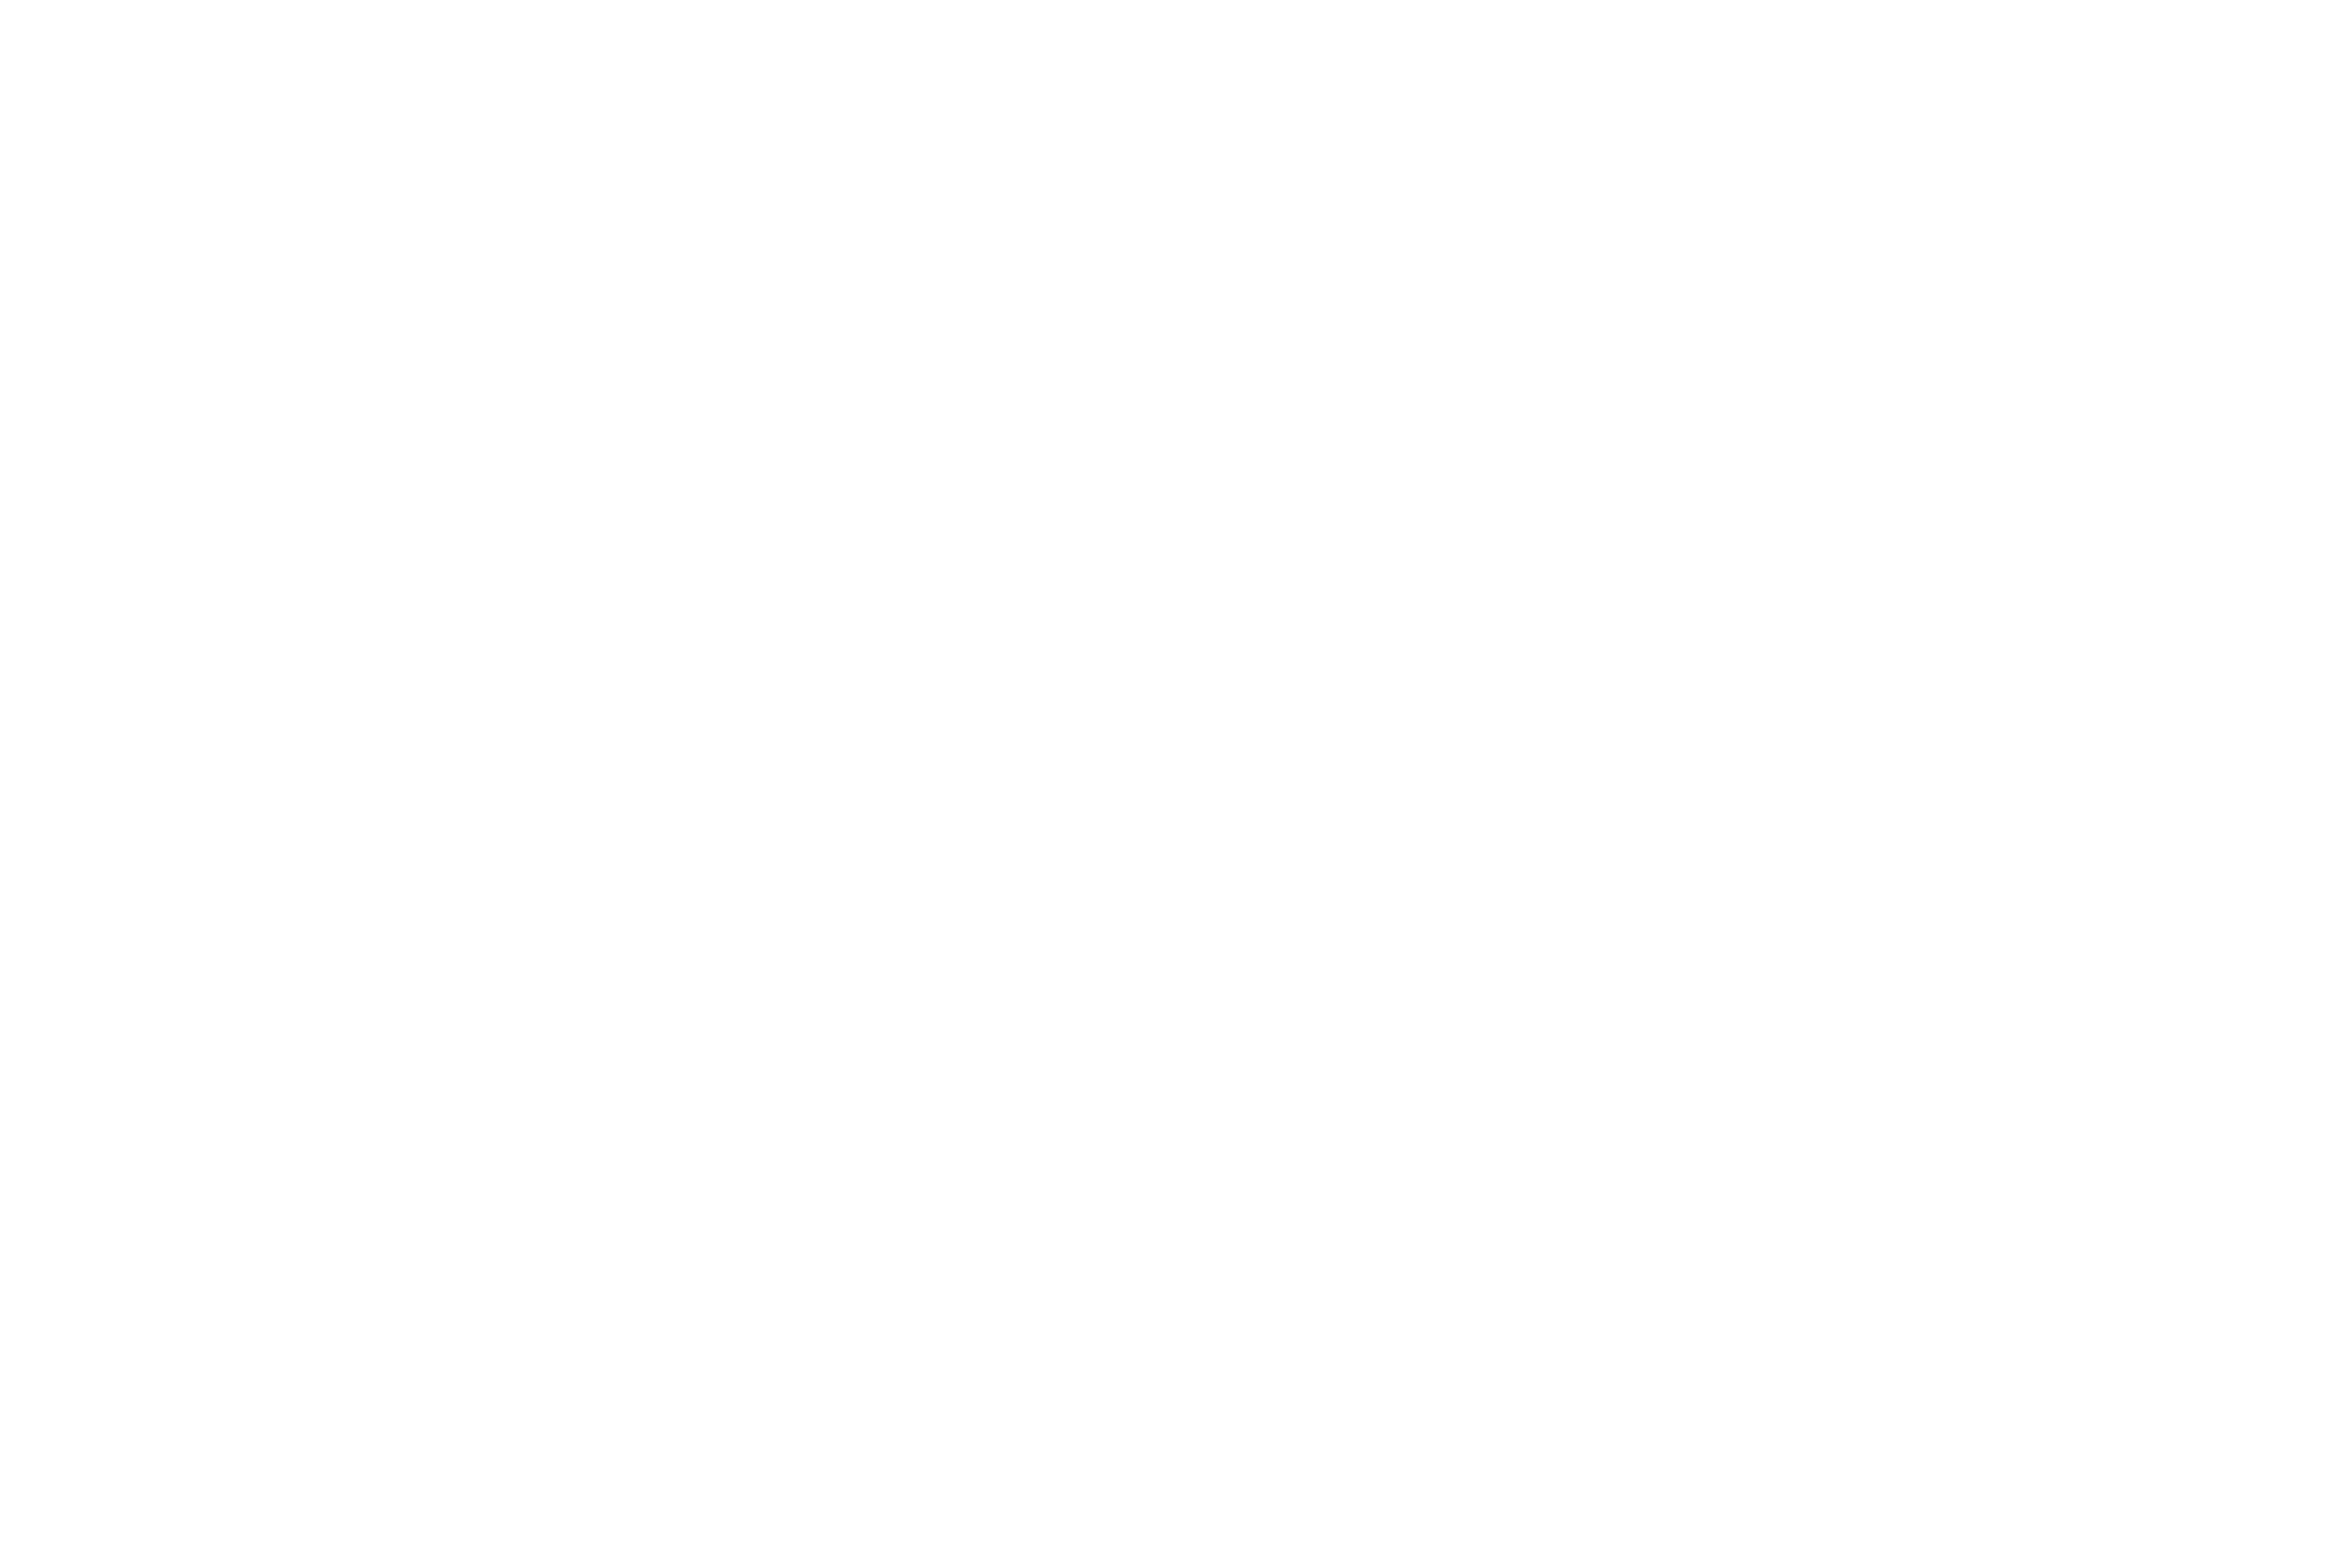 A.C. BRASSEAUX DESIGNS